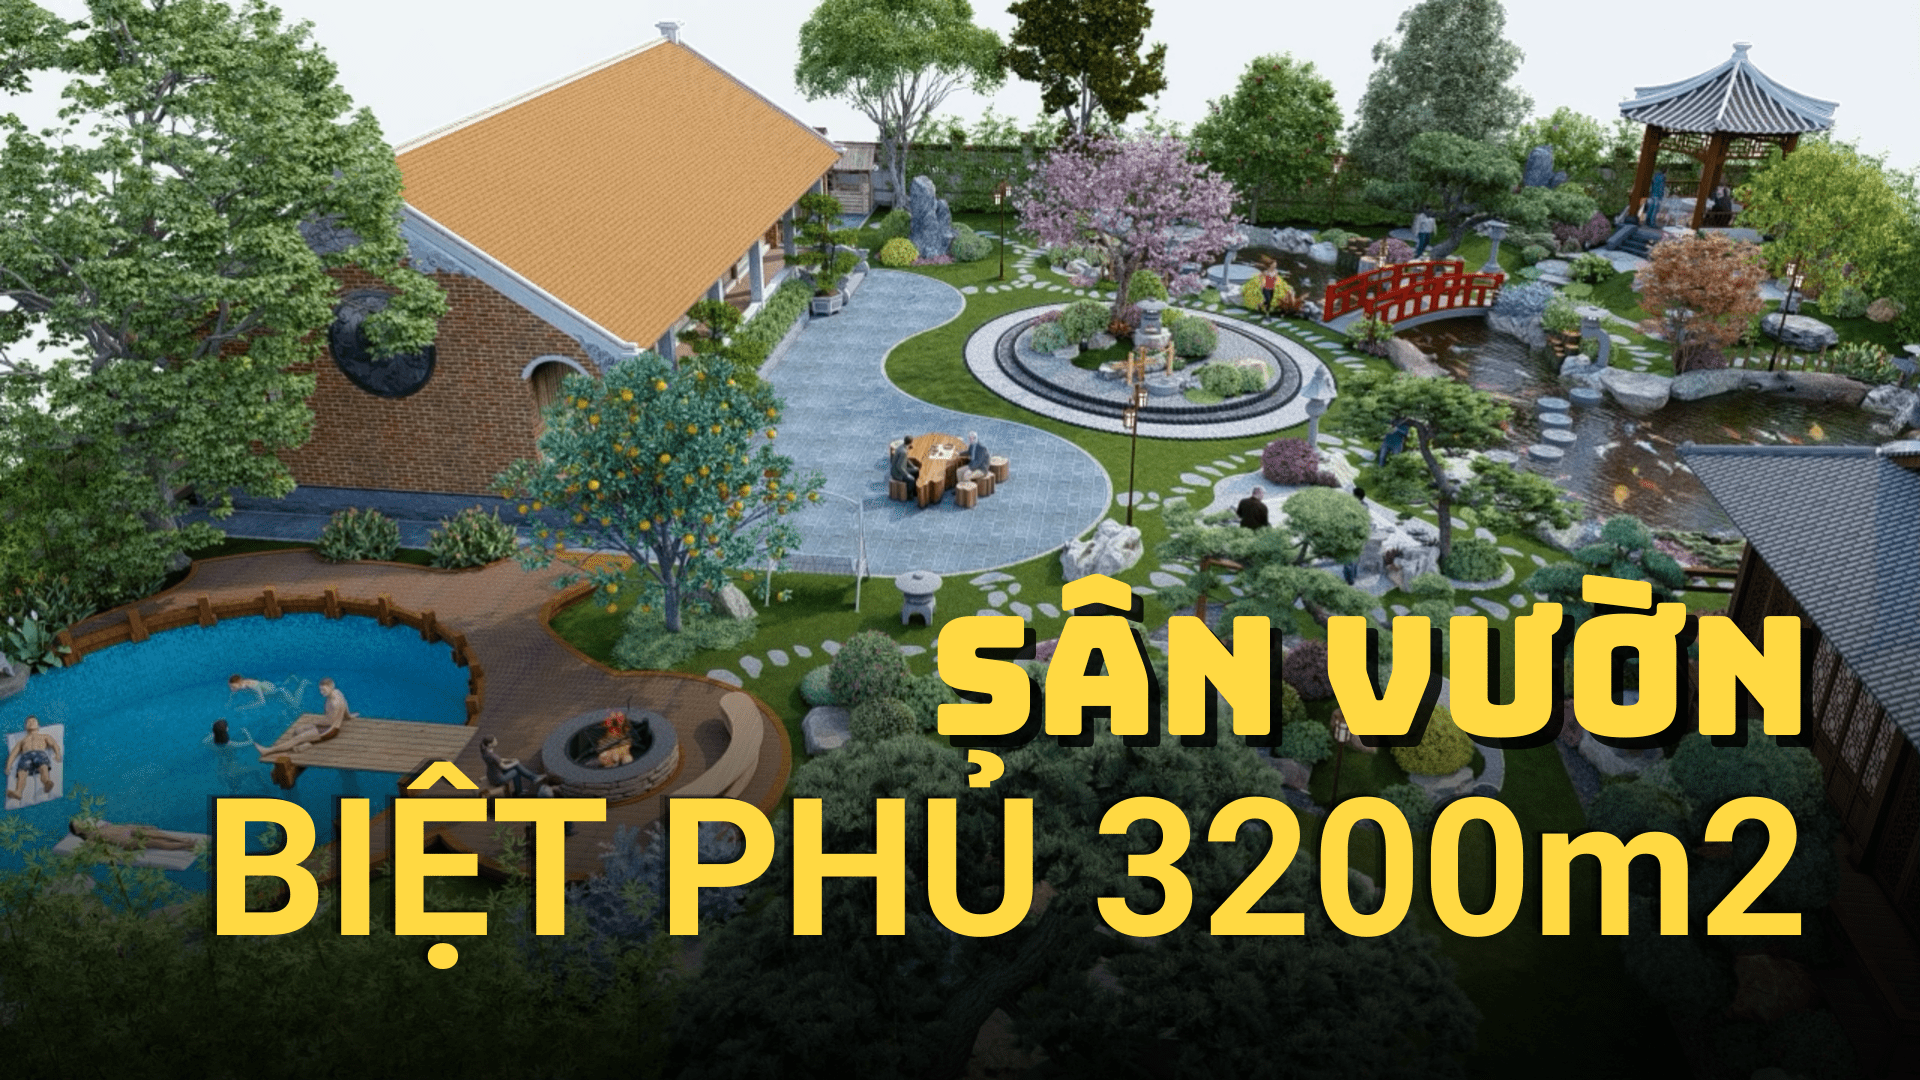 Thiết kế sân vườn cho biệt phủ rộng 3200m2 tại ngoại ô Hà Nội